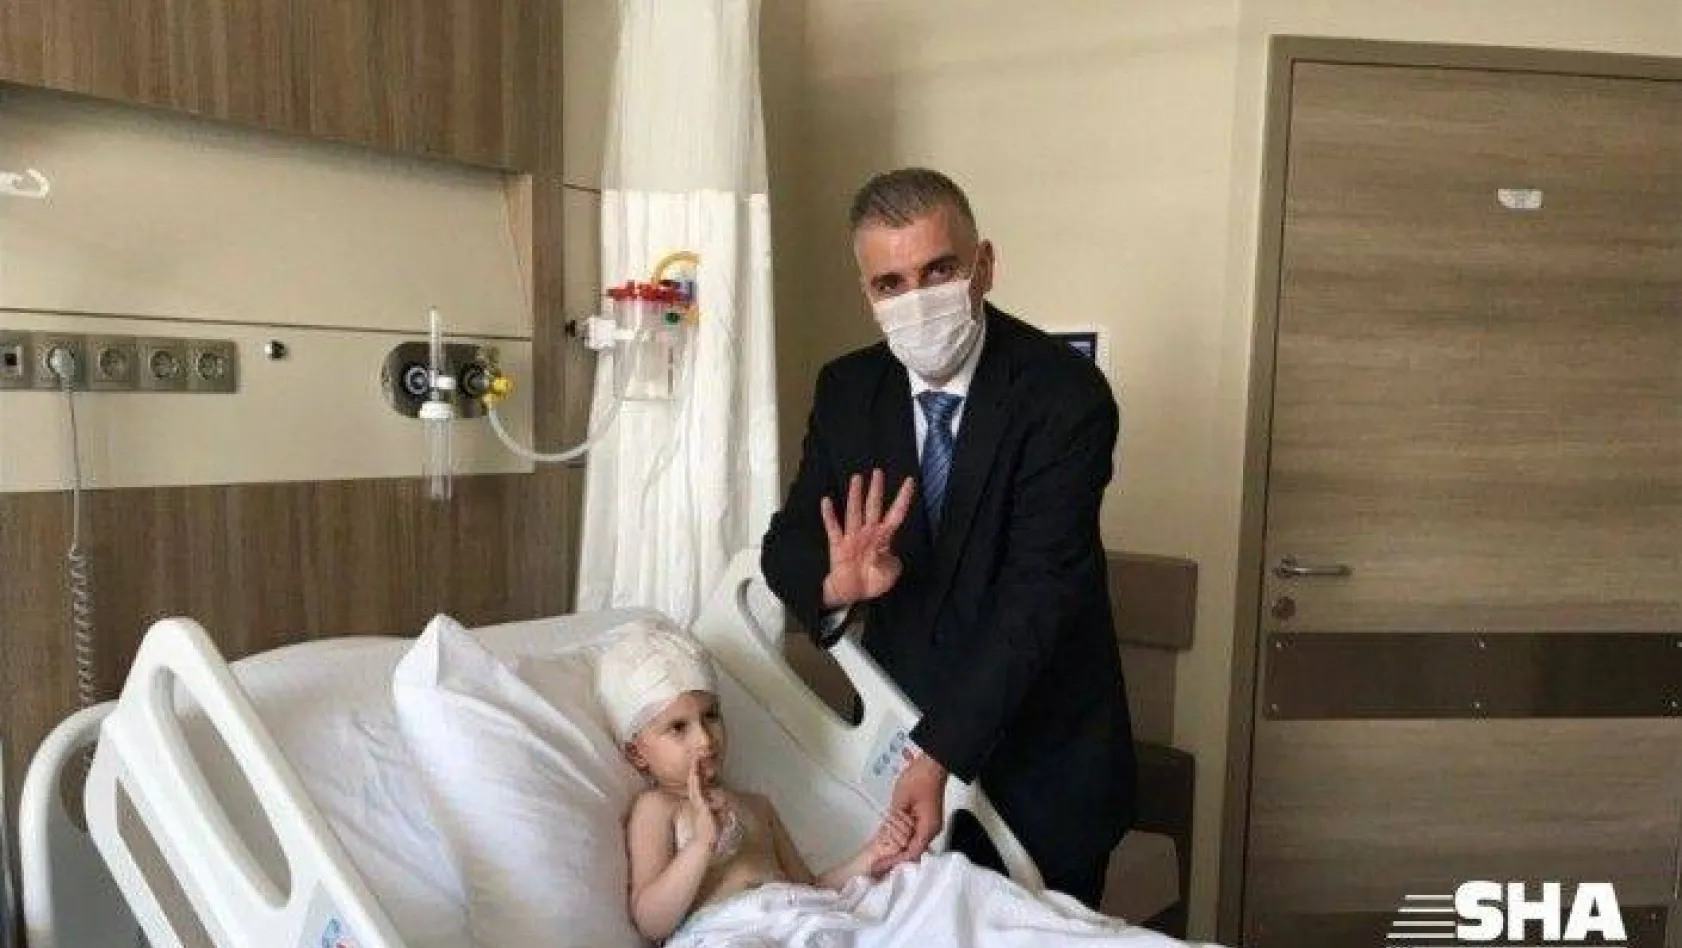 (Özel) Cumhurbaşkanı Erdoğan'ın hastane açılışında sohbet ettiği çocuğun babası konuştu